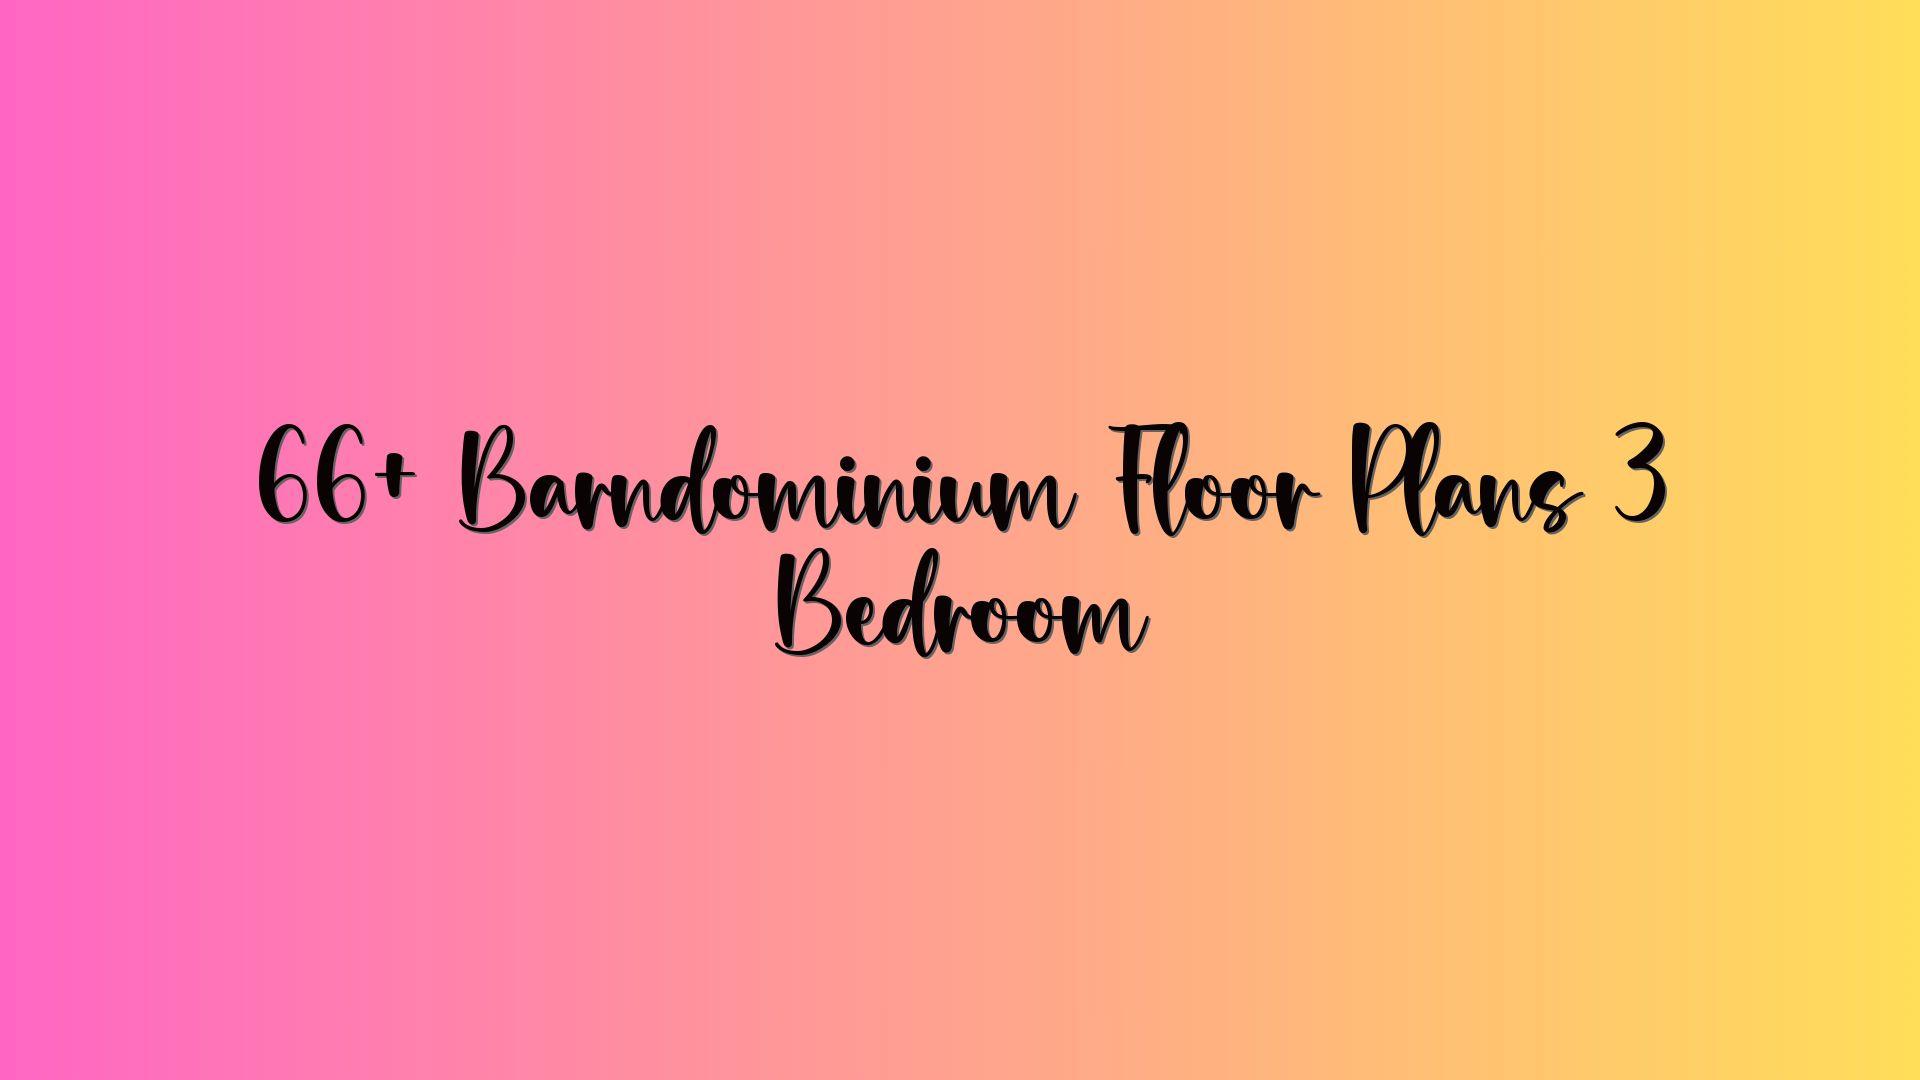 66+ Barndominium Floor Plans 3 Bedroom